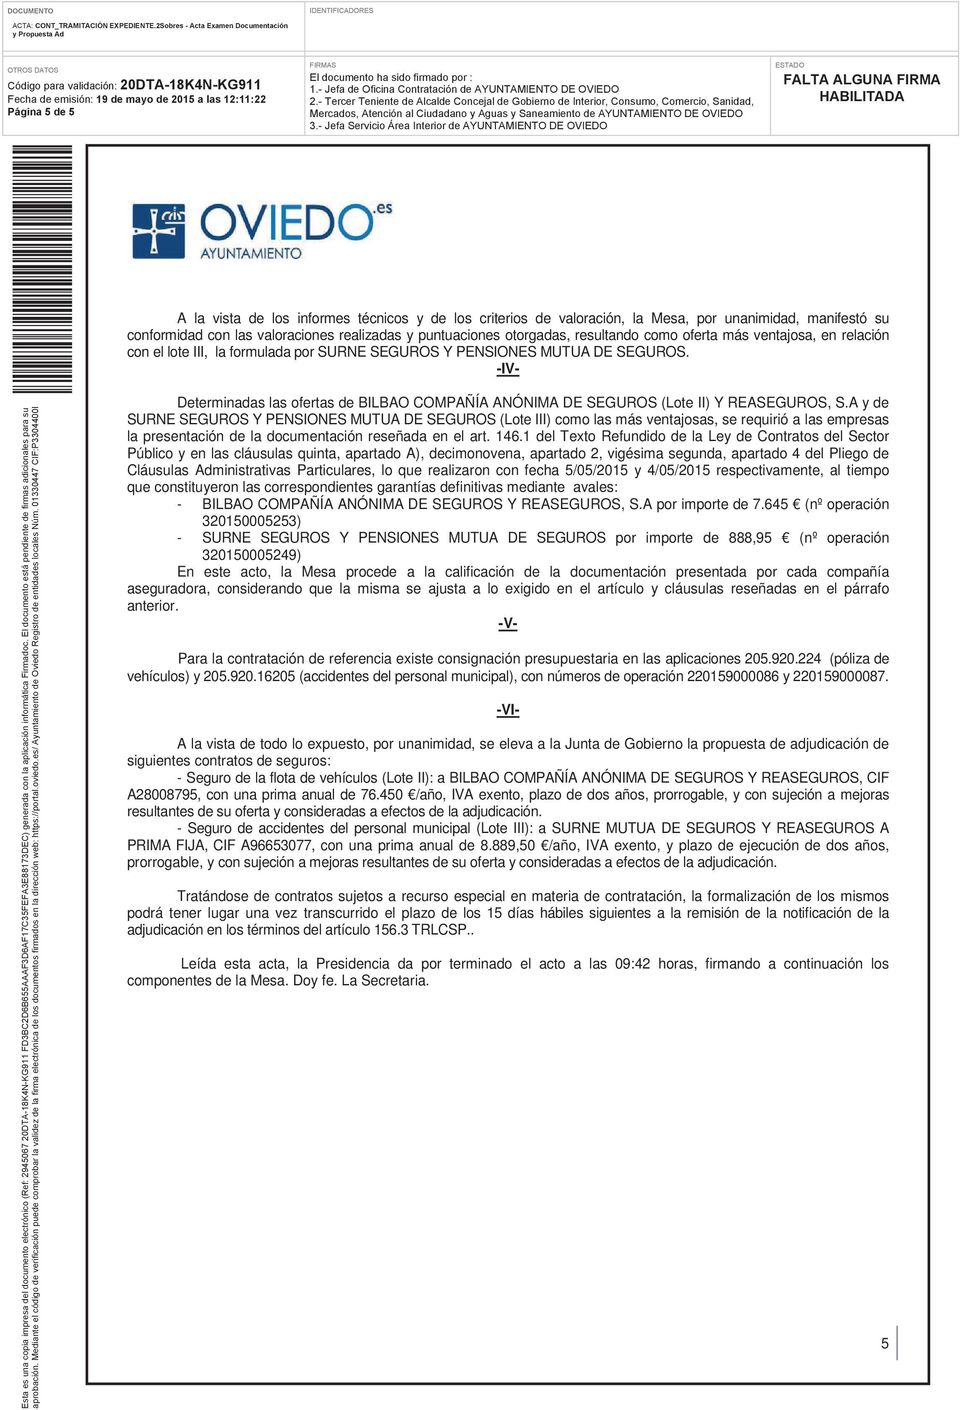 -IV- Determinadas las ofertas de BILBAO COMPAÑÍA ANÓNIMA DE SEGUROS (Lote II) Y REASEGUROS, S.